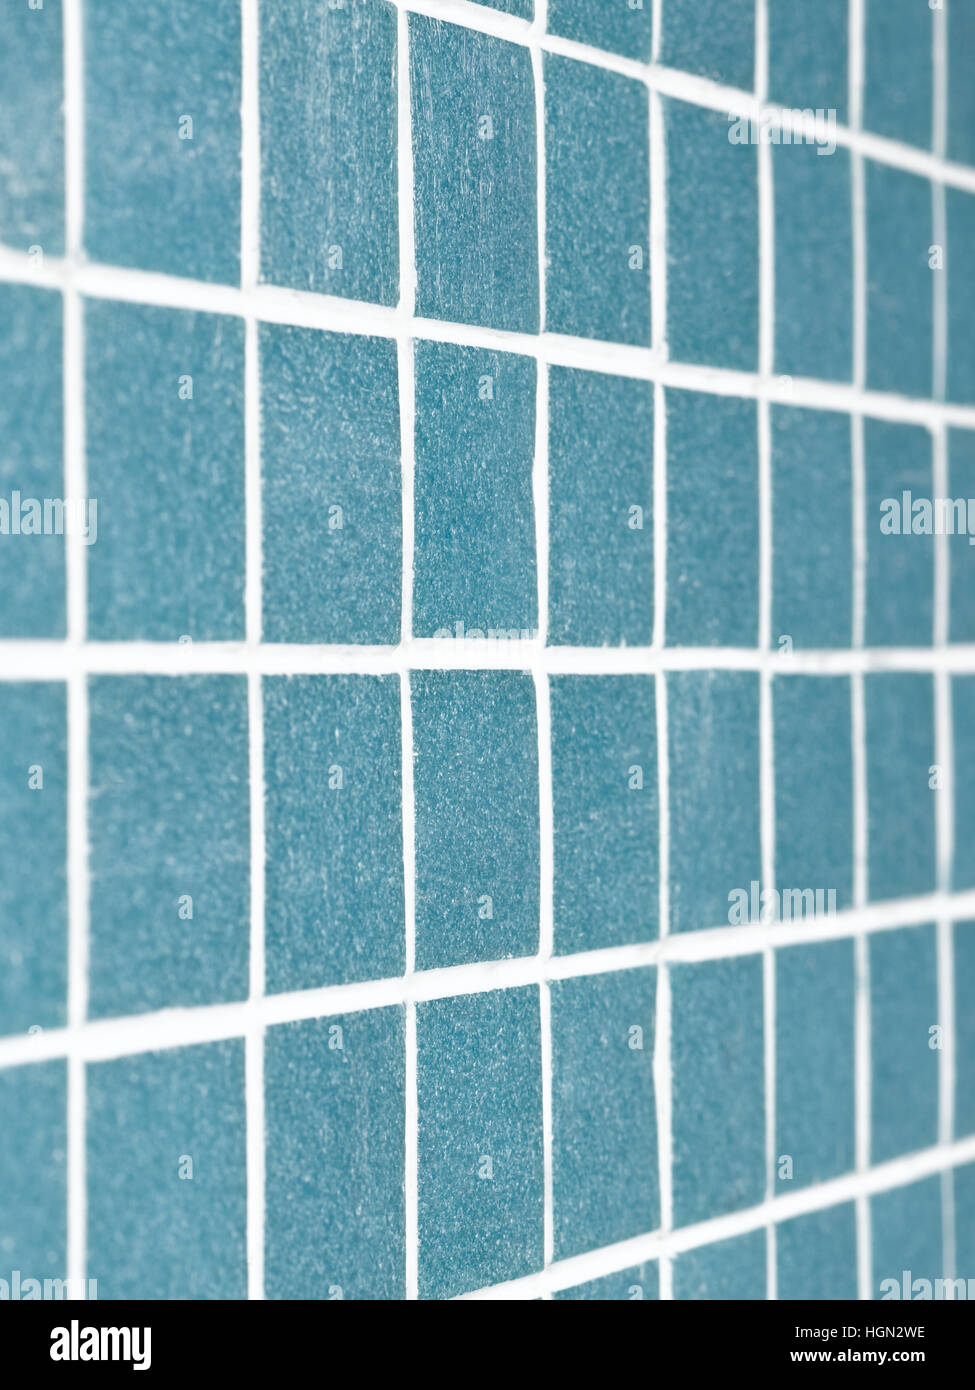 Blue Mosaic tile background Stock Photo